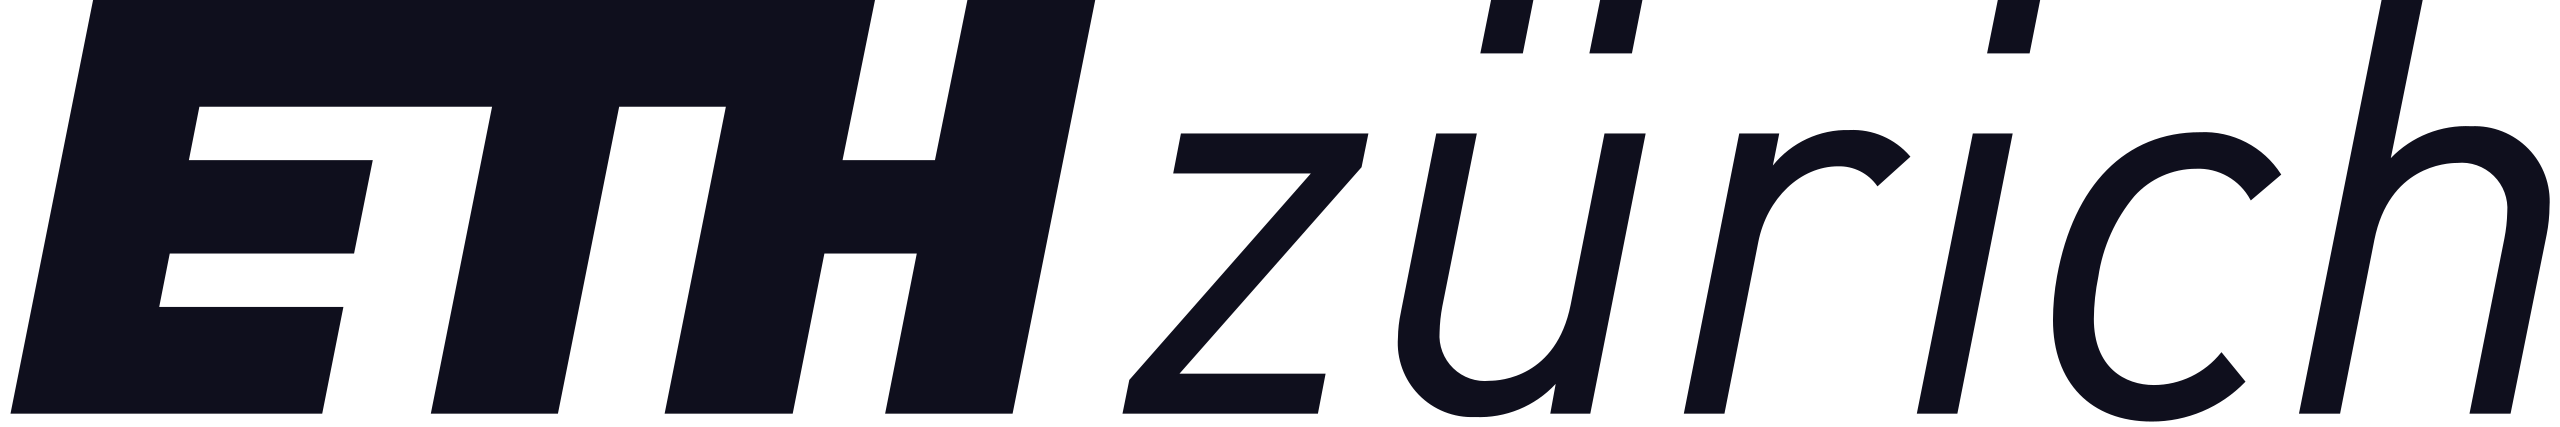 ETH Zurich Logo in Black